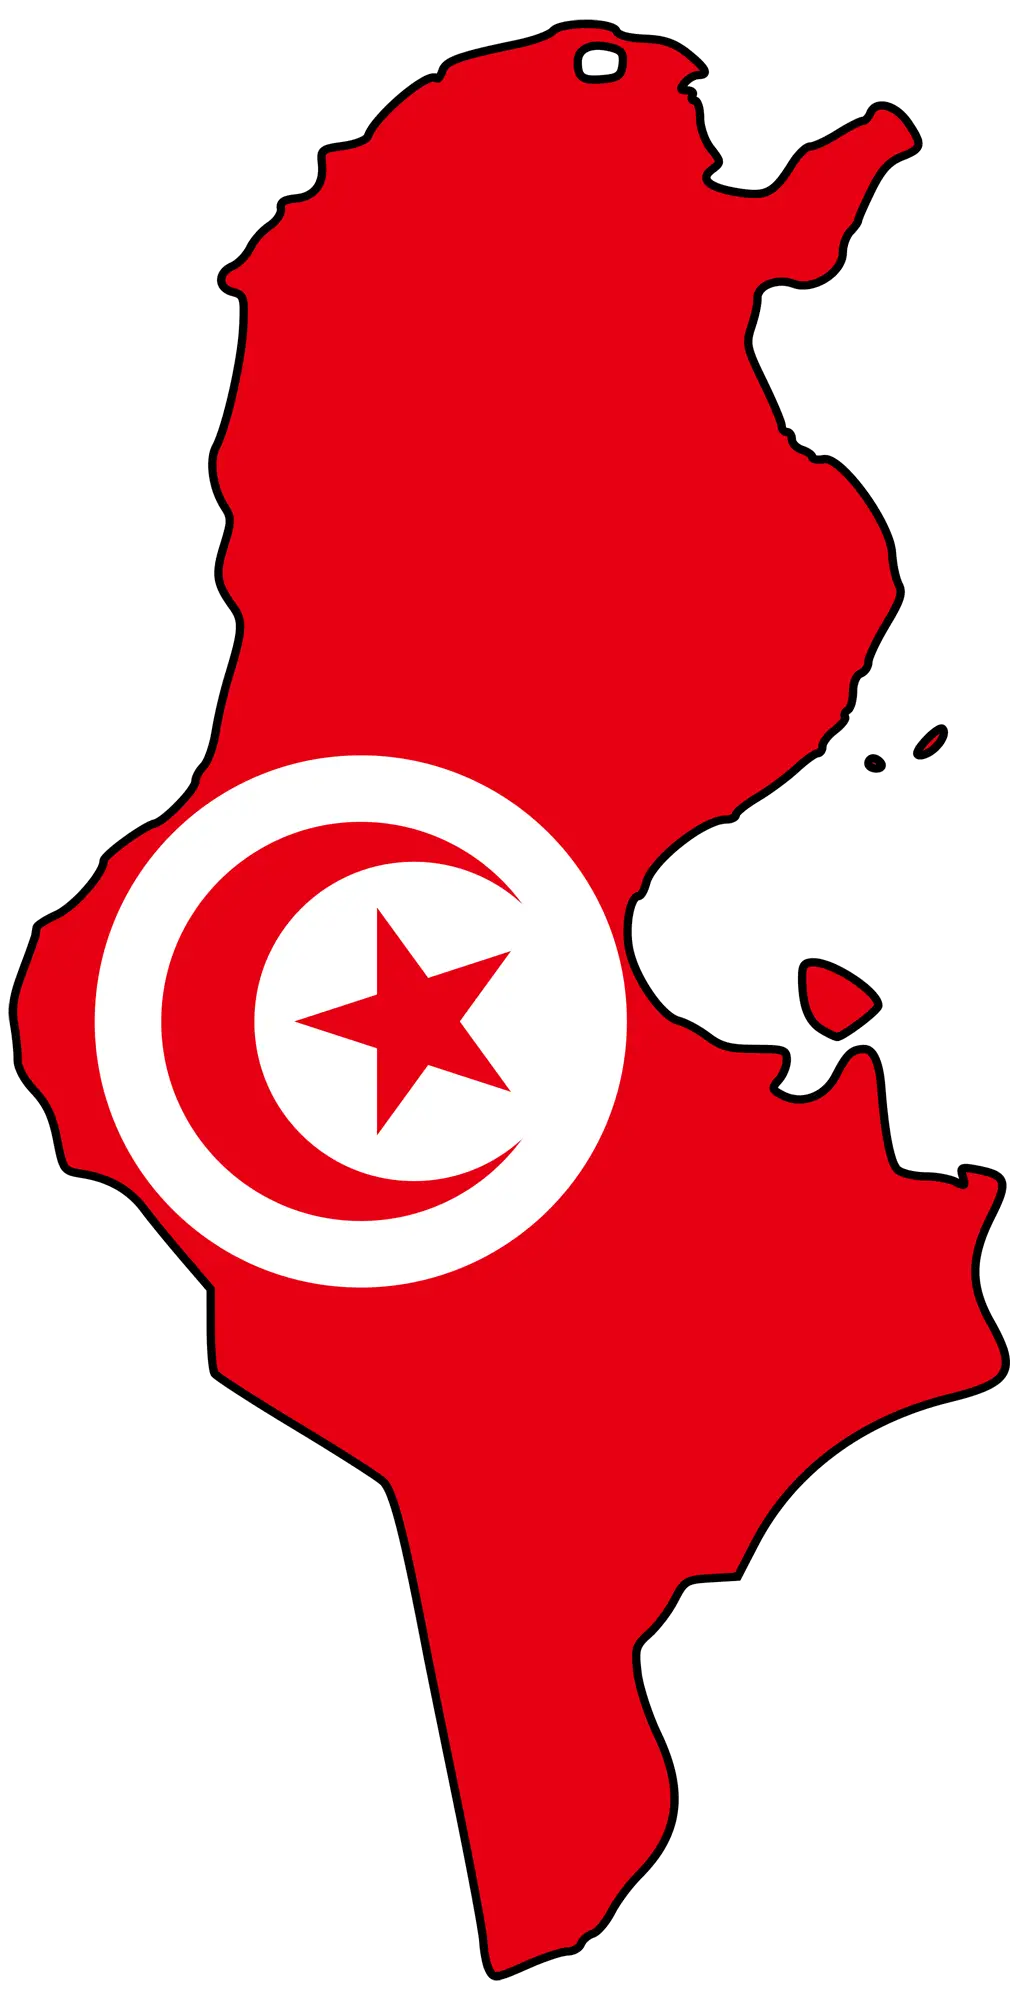 Tunisia_bayrak_harita.png